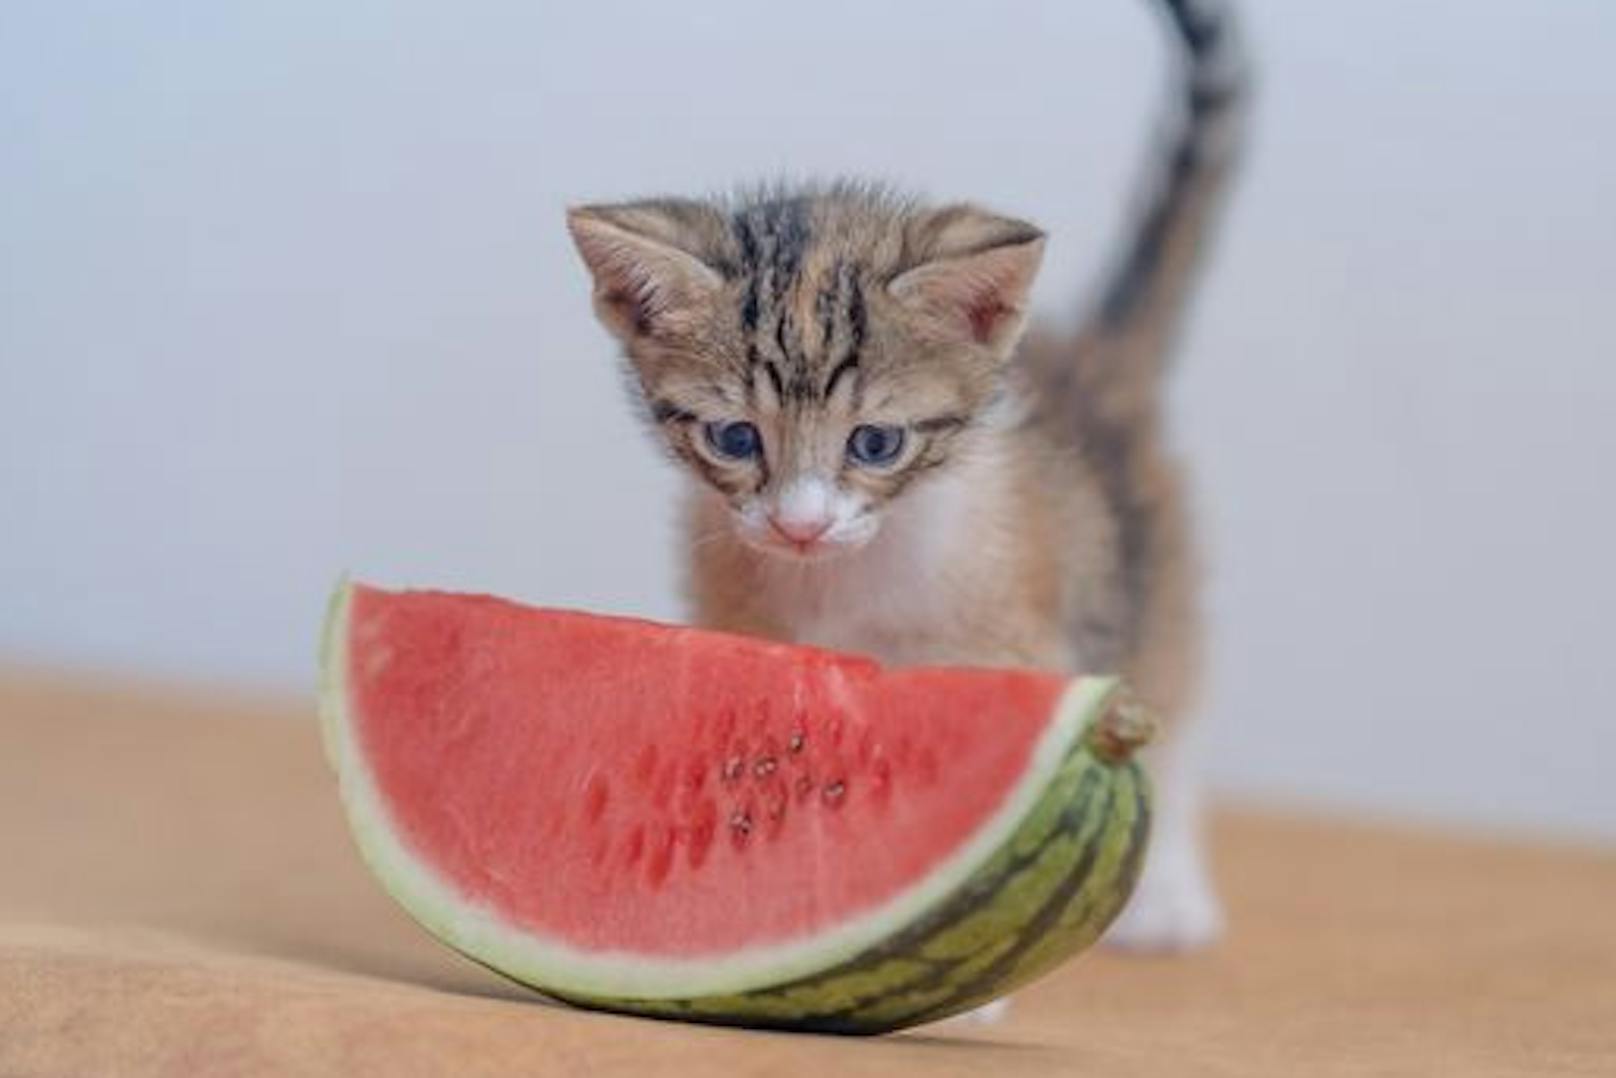 Ob Wasser, Zucker oder Honig - <strong>Melonen</strong> sind ein toller Snack und werden von Katzen auch gern gefressen. Mineralstoffe und Antioxidantien schaden ihr keinesfalls.